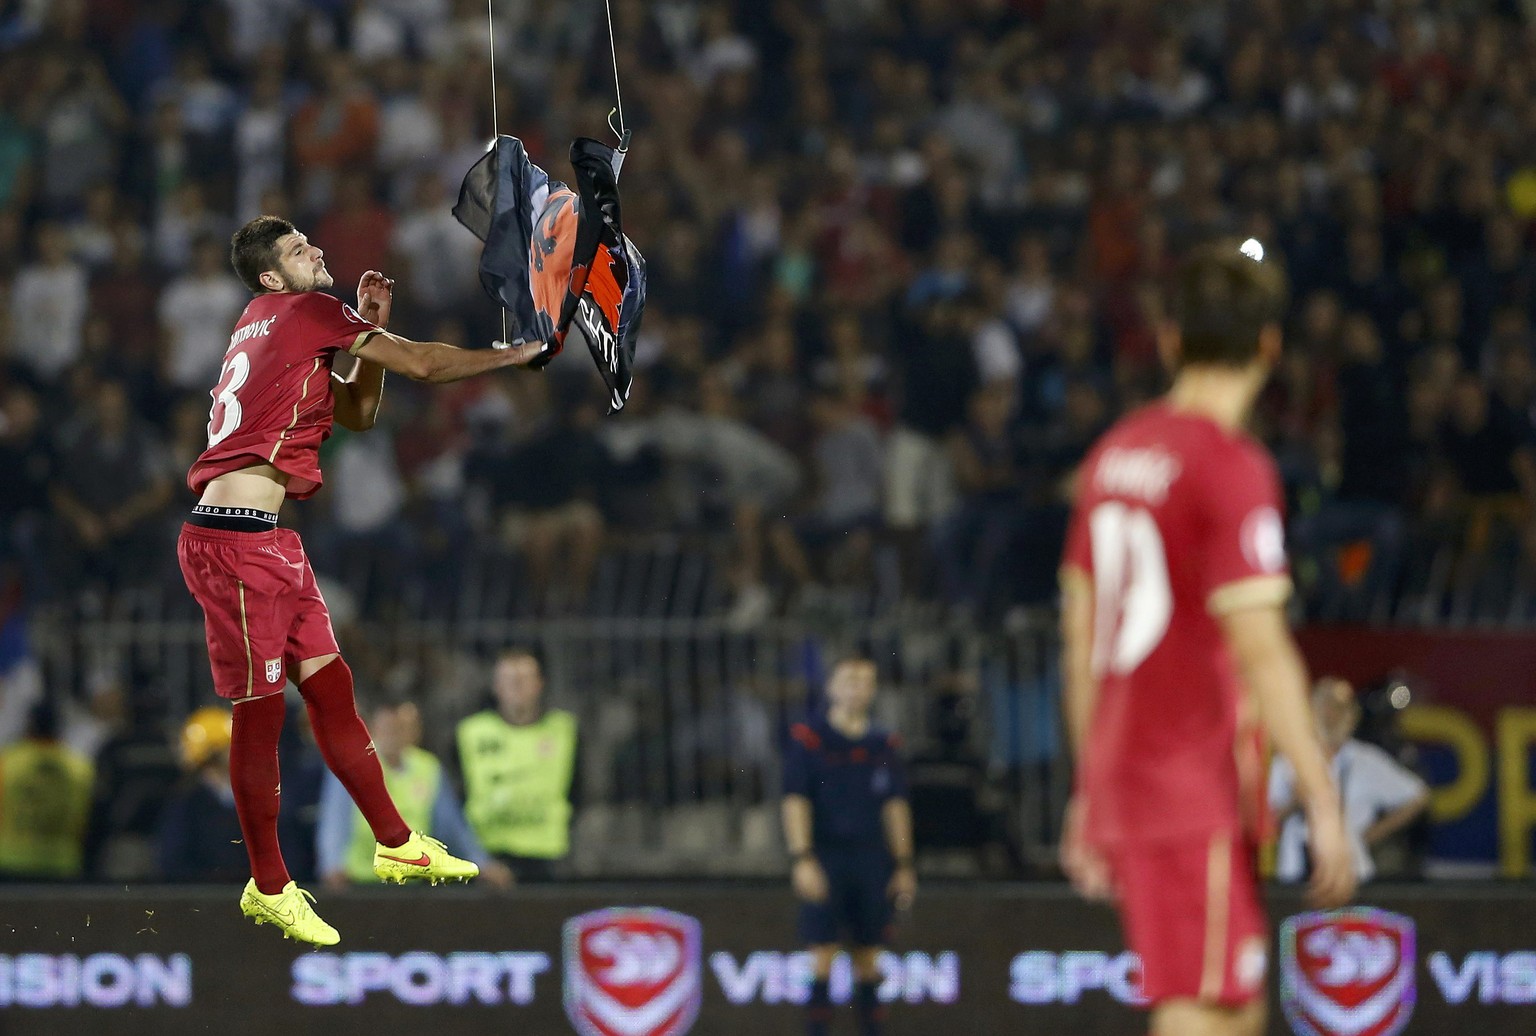 In der 42. Minute taucht über dem Stadion in Belgrad eine Drohne mit einer Fahne auf, die ein potenzielles Grossalbanien zeigt. Der serbische Spieler Stefan Mitrovic kann die Fahne an sich reissen.